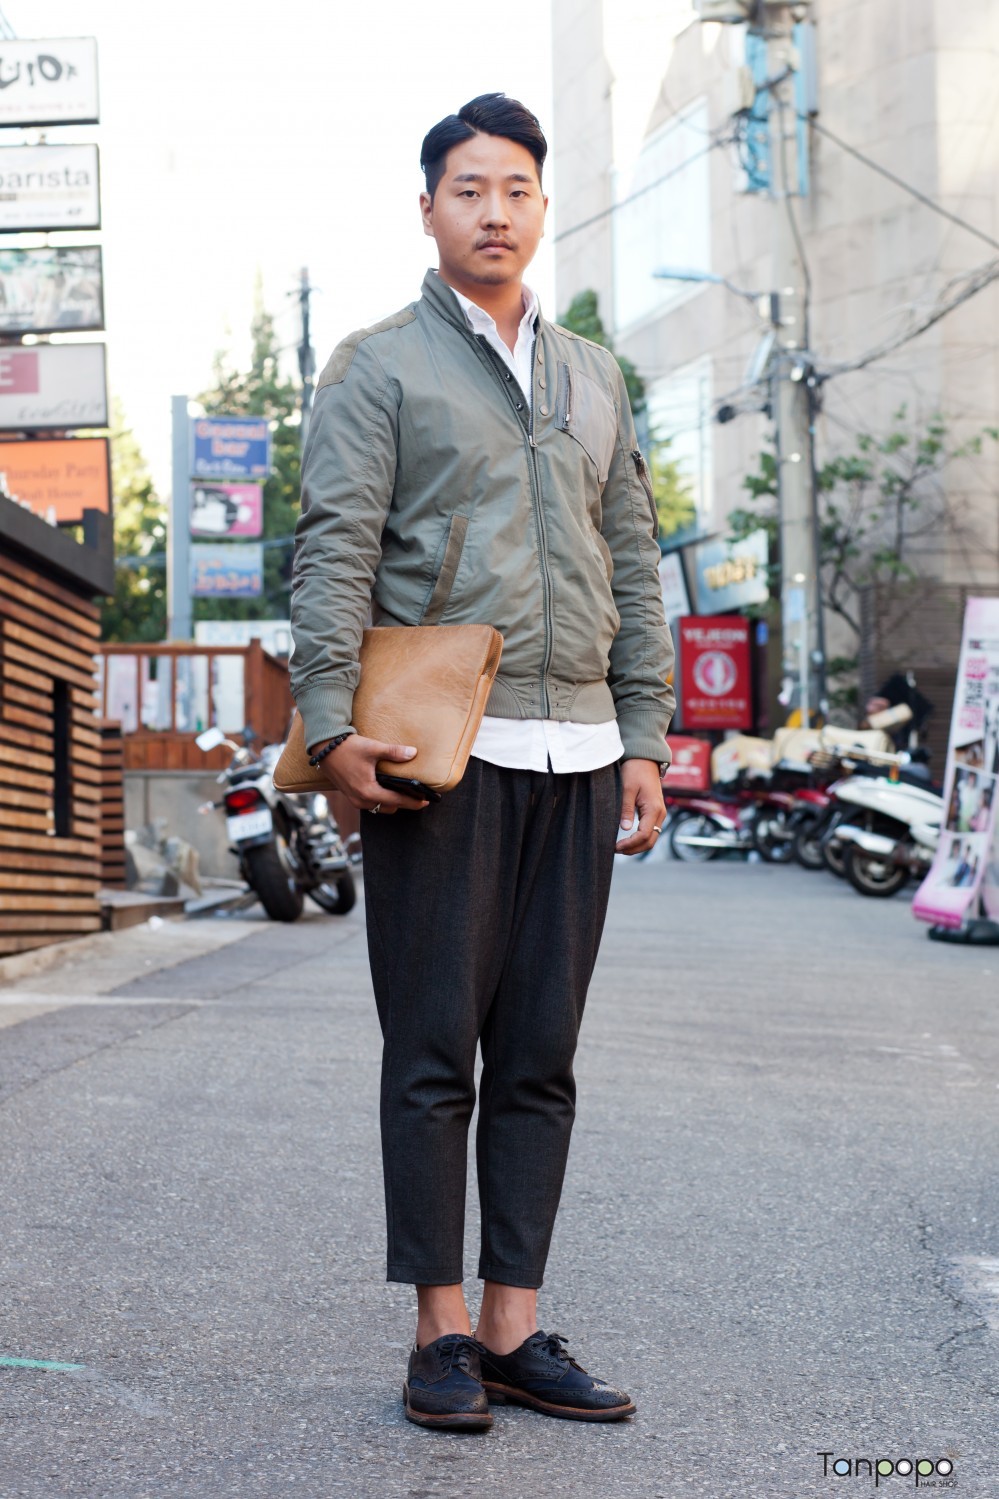 한국서울남성패션스타일헤어스타일-韓国のソウル男性ファッションスタイルヘアスタイル_007.jpg